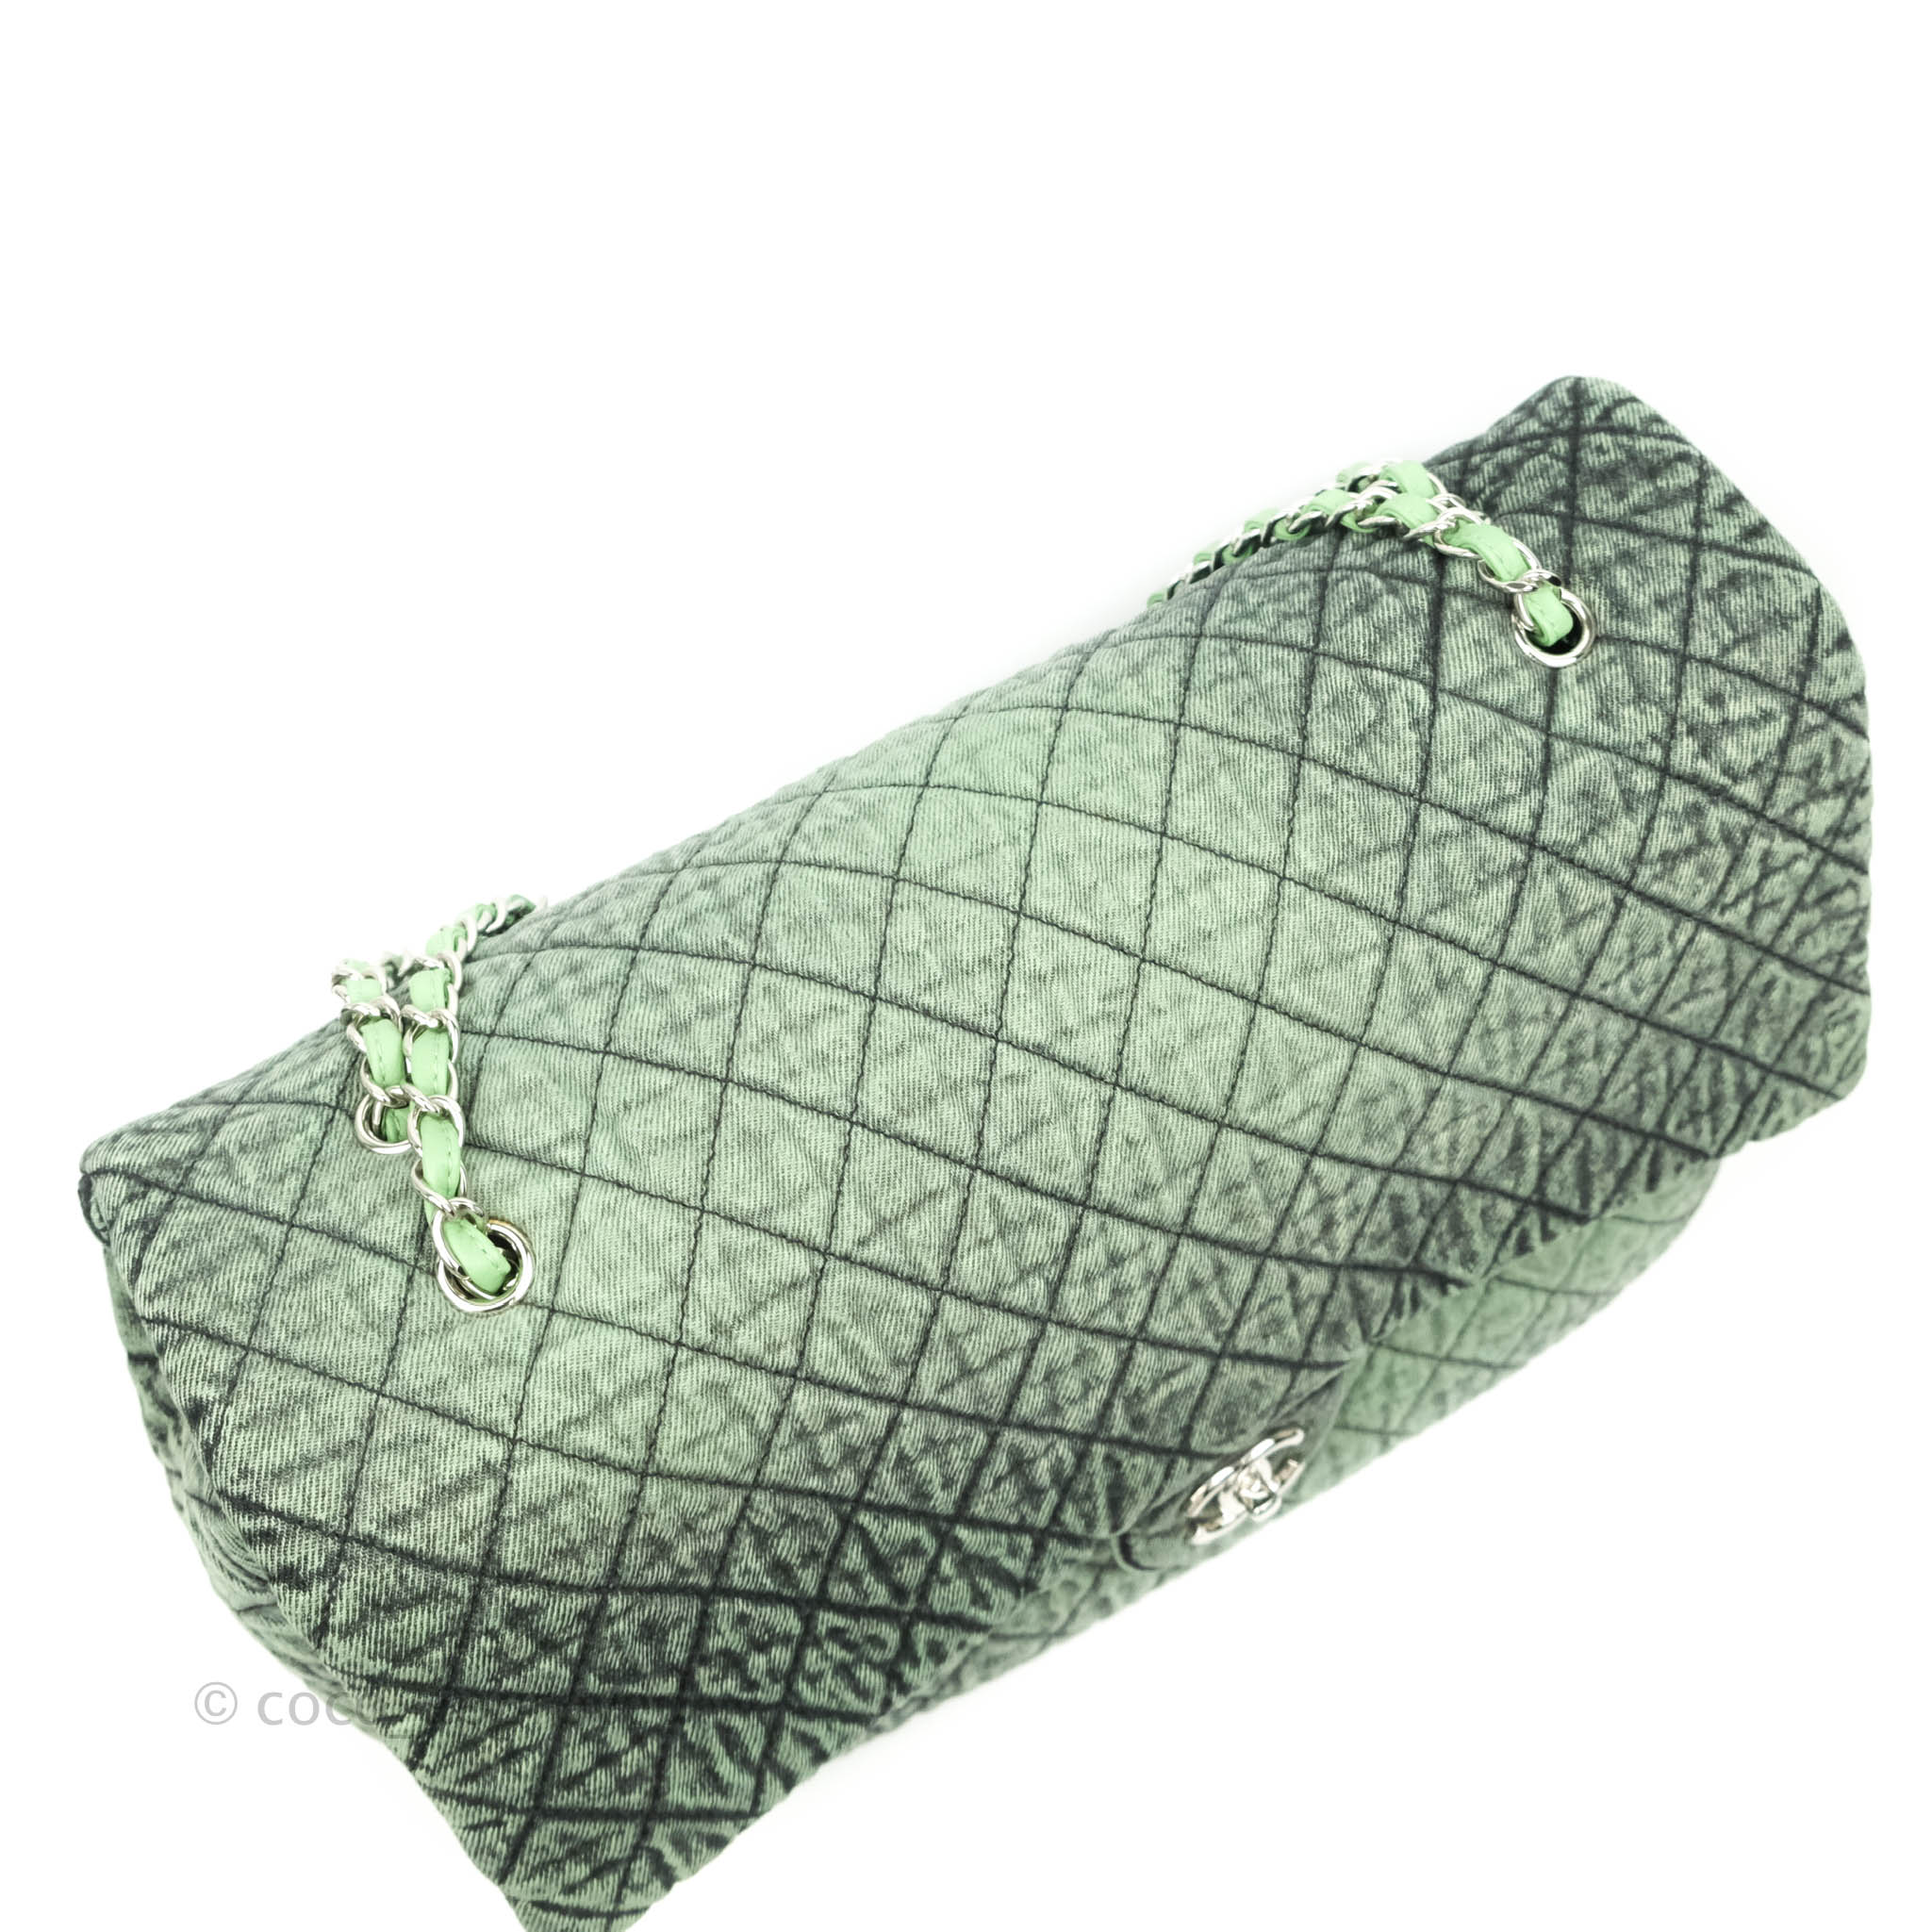 Chanel CC Denim Shoulder Bag (SHG-EFvBLv)